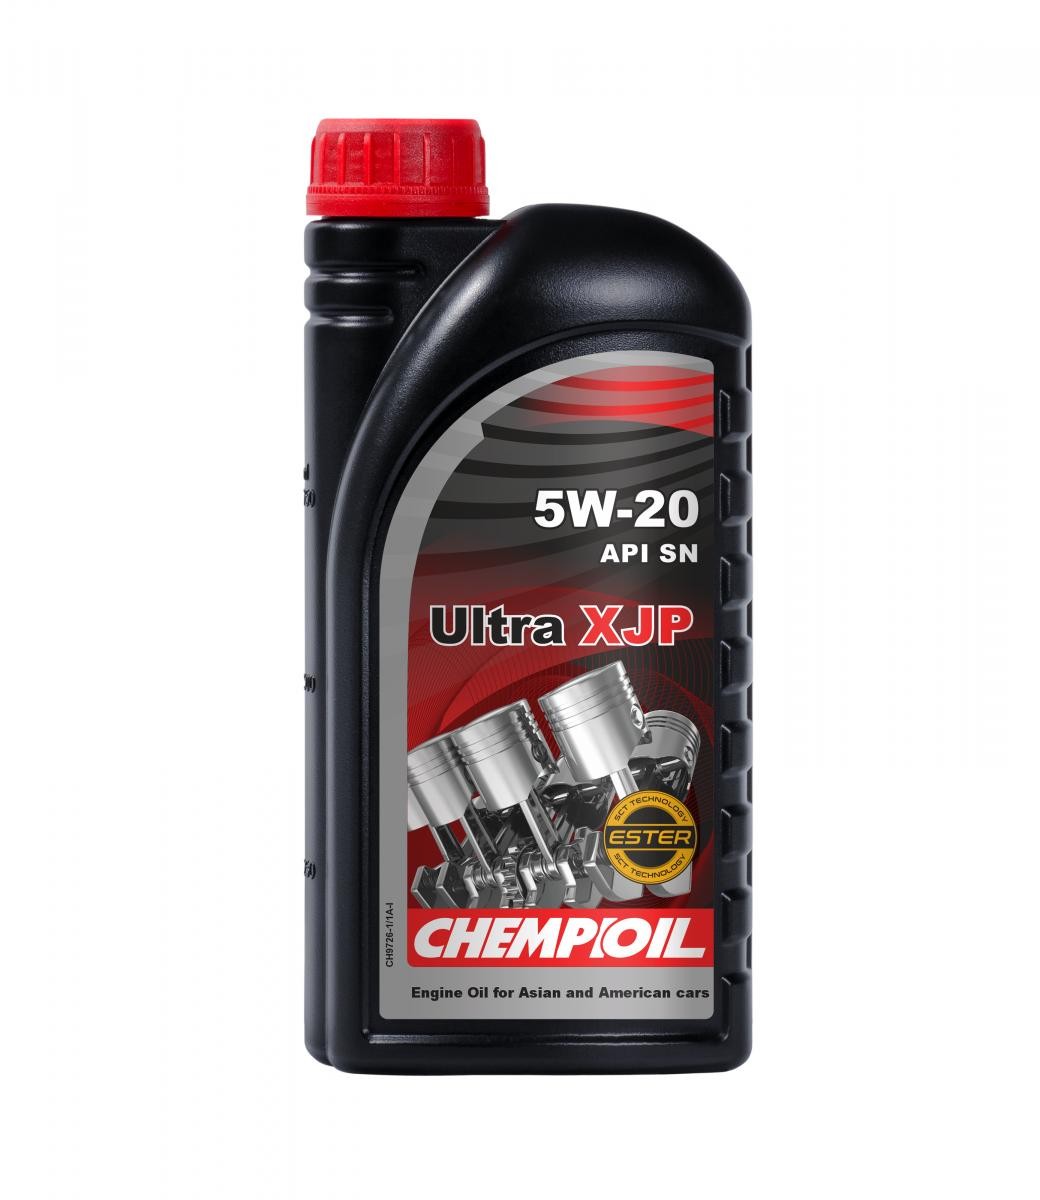 CHEMPIOIL Ultra, XJP 5W-20, 1l Motor oil CH9726-1 buy